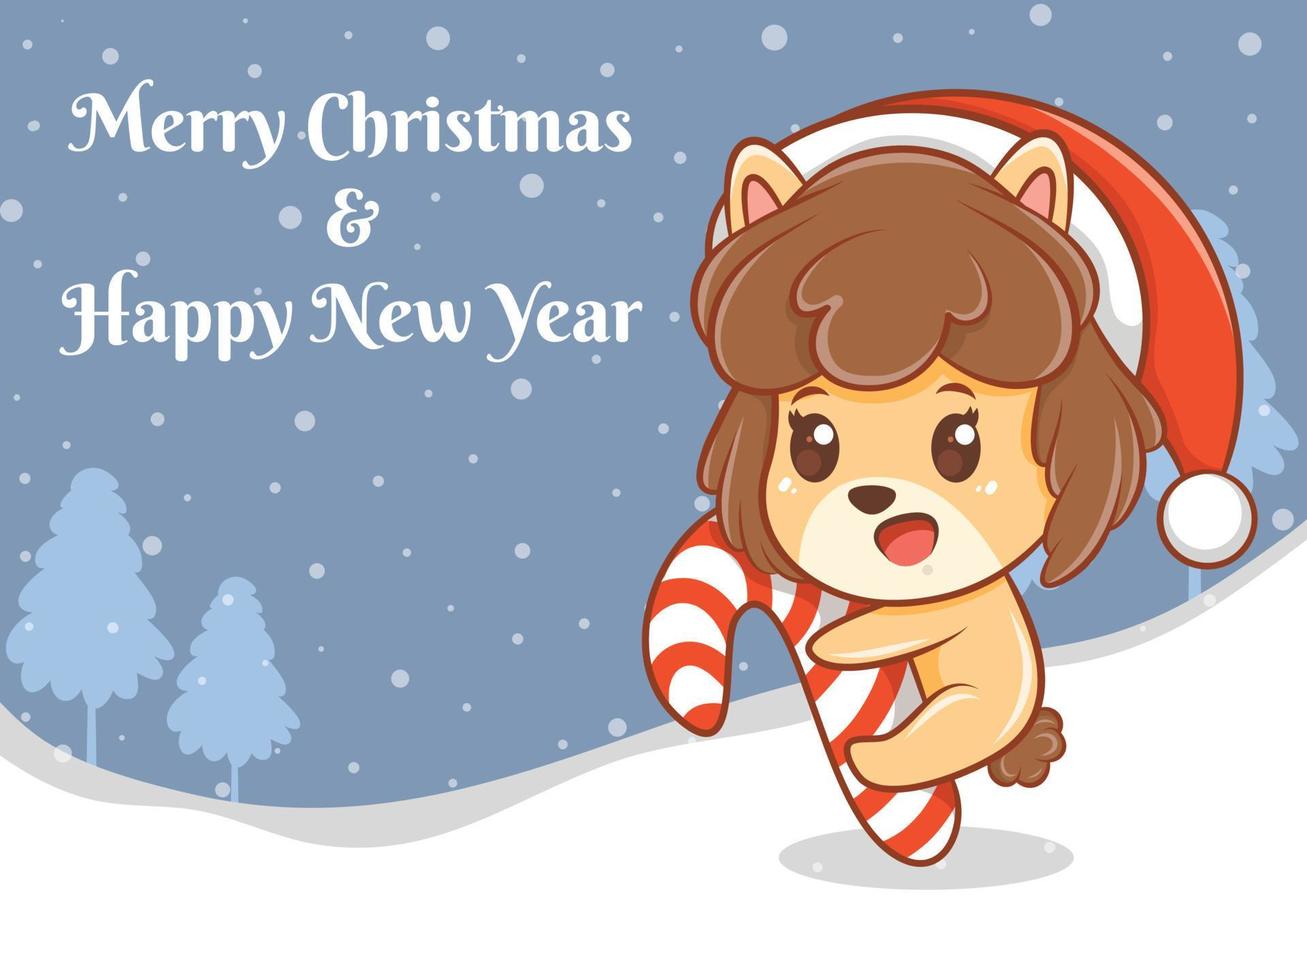 söt valp seriefigur med god jul och gott nytt år hälsning banner. vektor